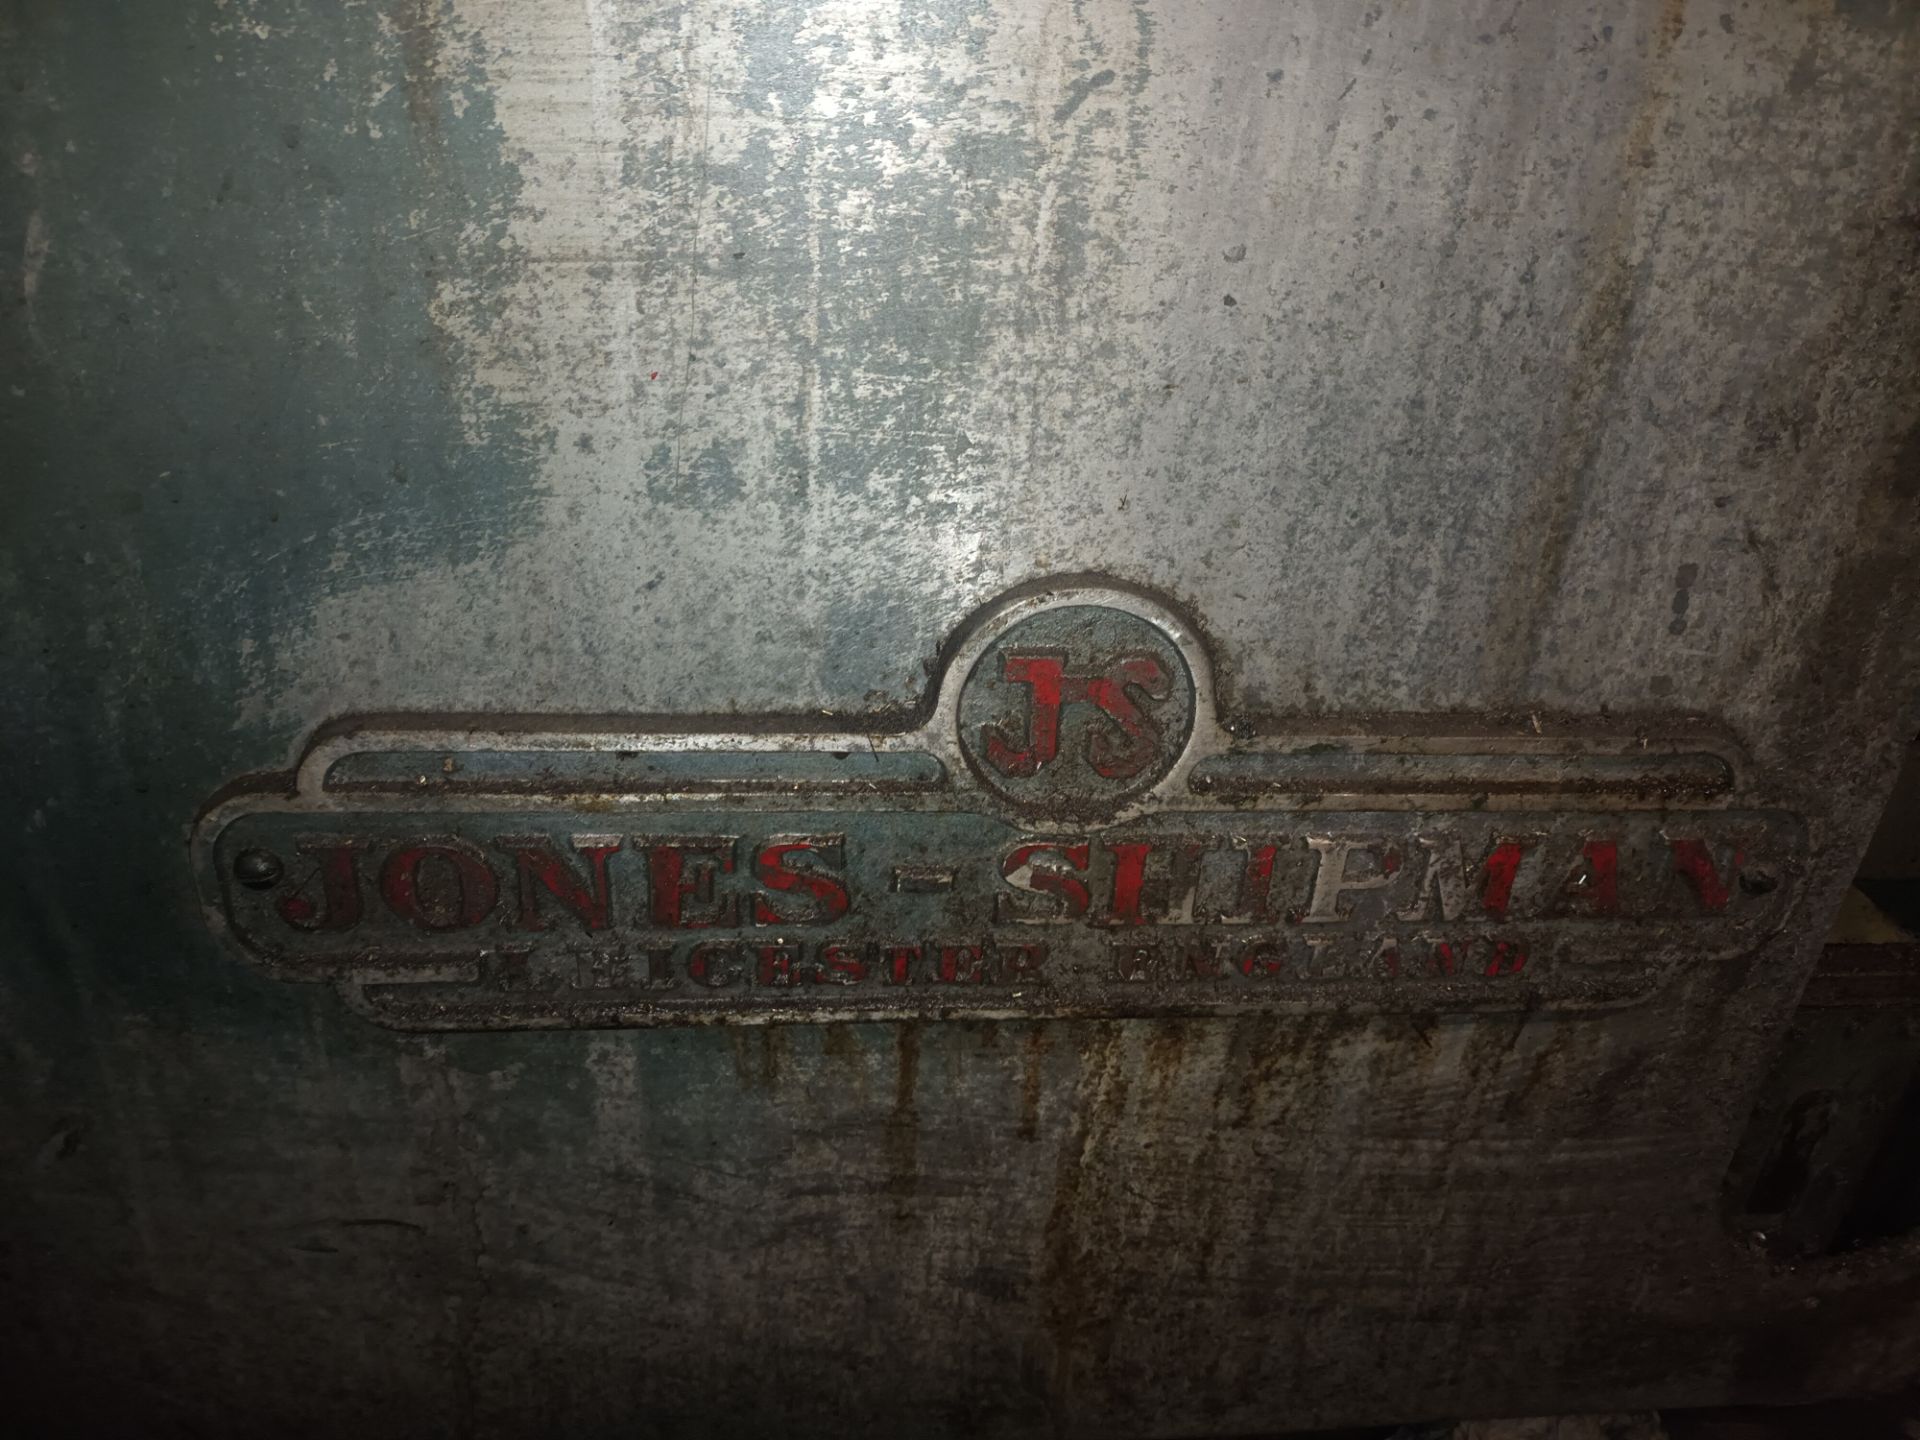 Jones & Shipman cylindrical grinder - Image 8 of 10